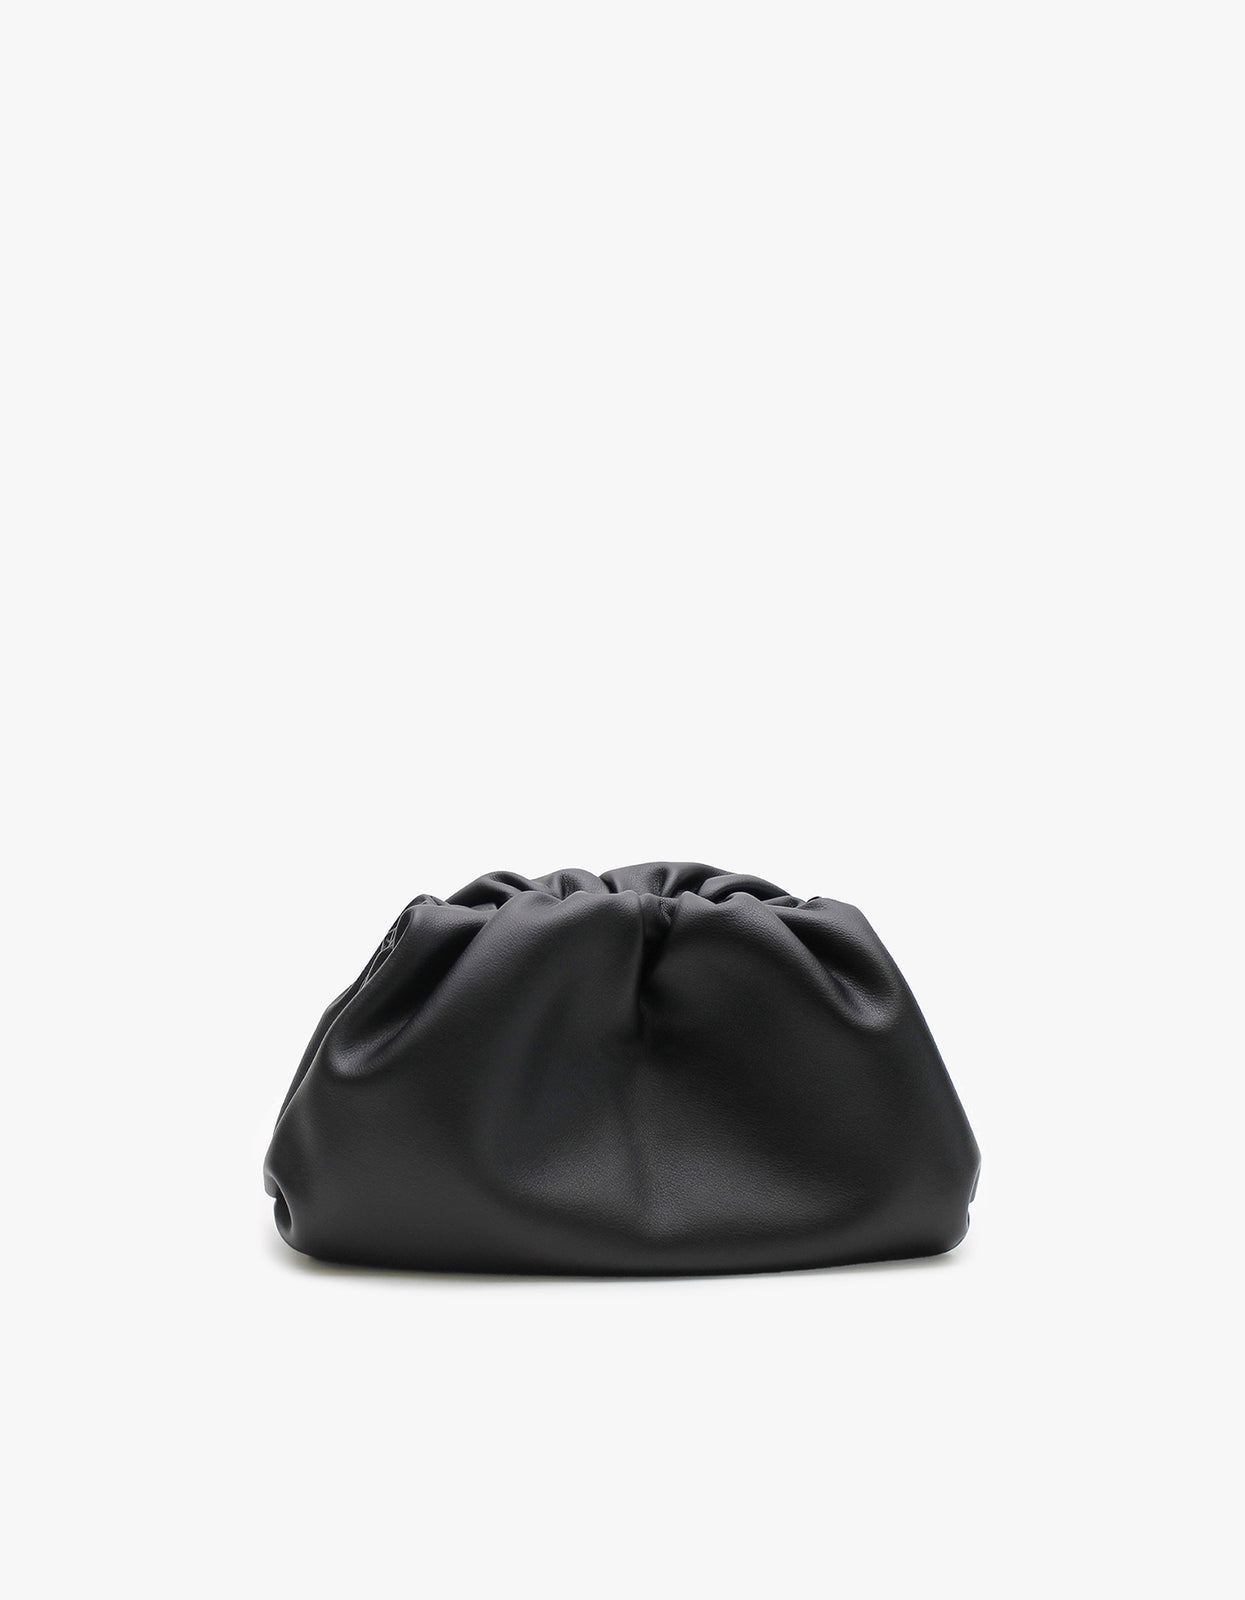 Superette | Dumpling Bag - Black